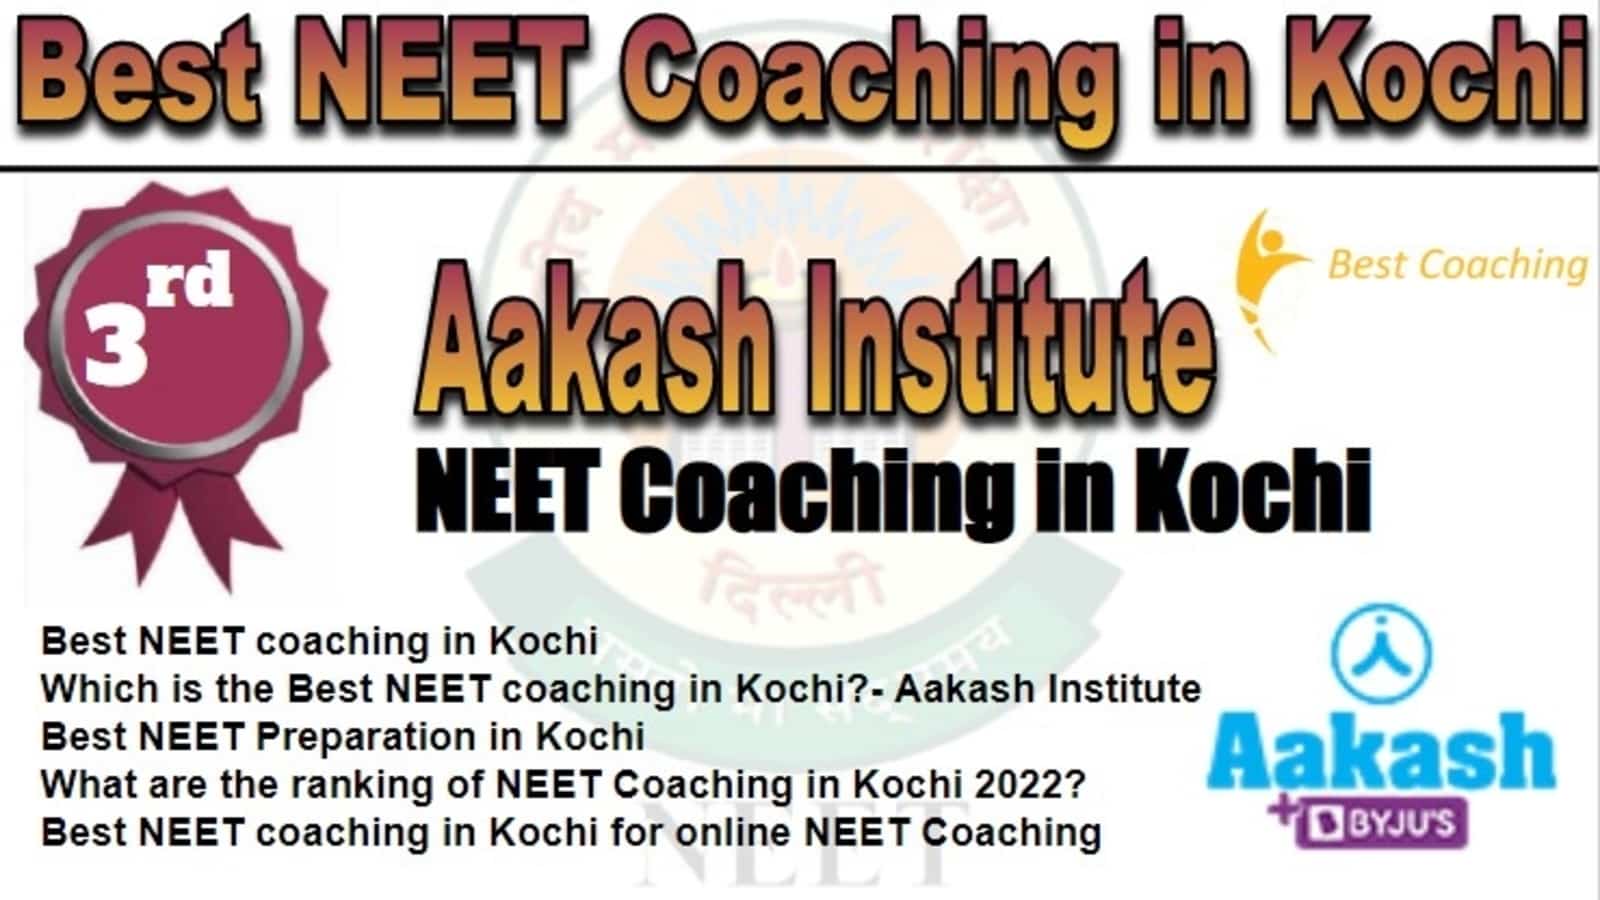 Rank 3 Best NEET Coaching in Kochi